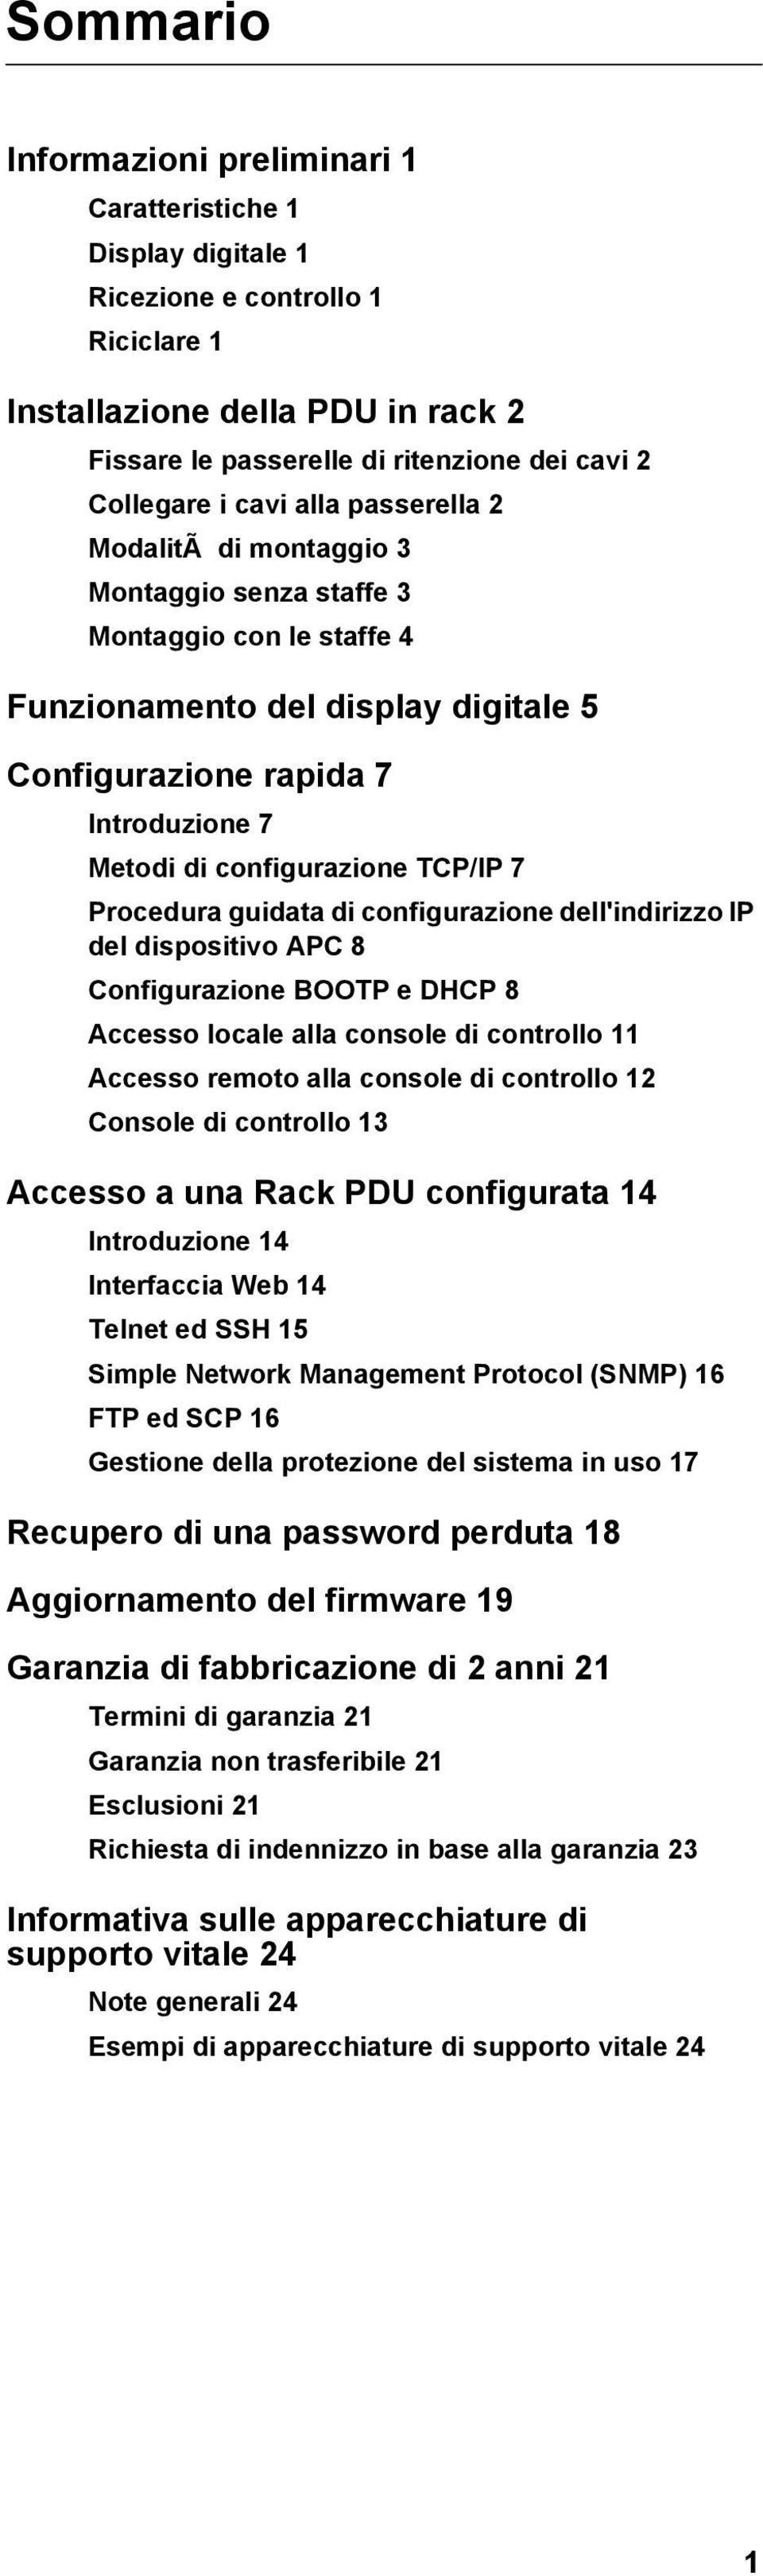 configurazione TCP/IP 7 Procedura guidata di configurazione dell'indirizzo IP del dispositivo APC 8 Configurazione BOOTP e DHCP 8 Accesso locale alla console di controllo 11 Accesso remoto alla